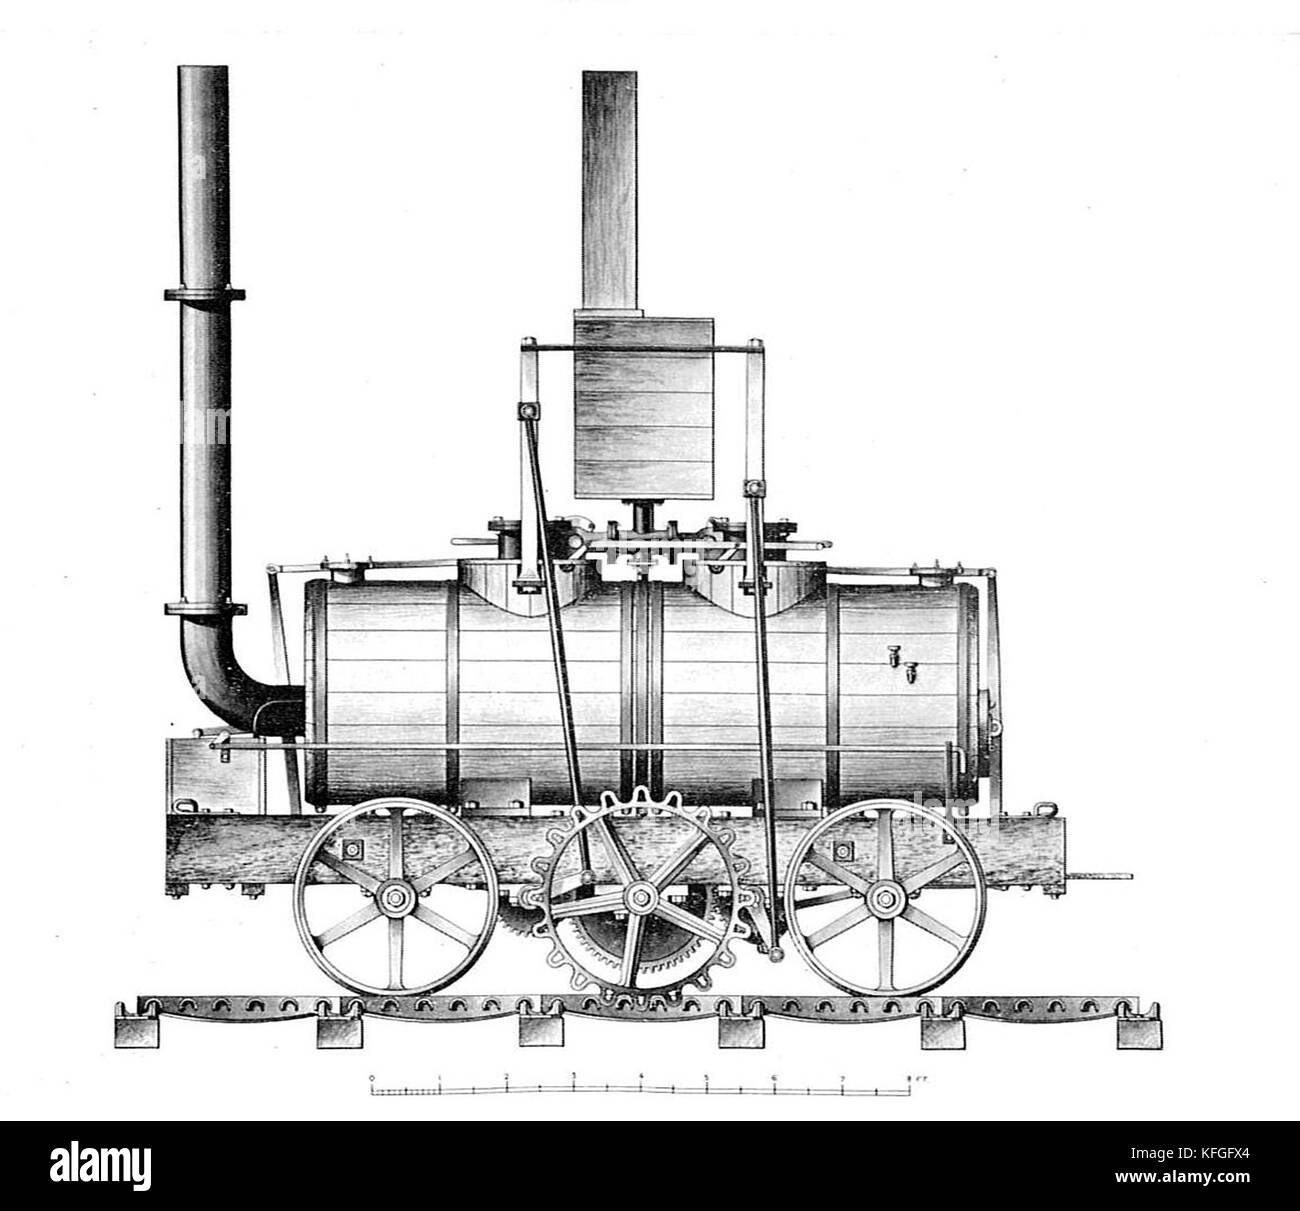 Die Salamanca Lokomotive, die erste kommerziell erfolgreiche Dampflokomotive, wurde 1812 gebaut Stockfoto